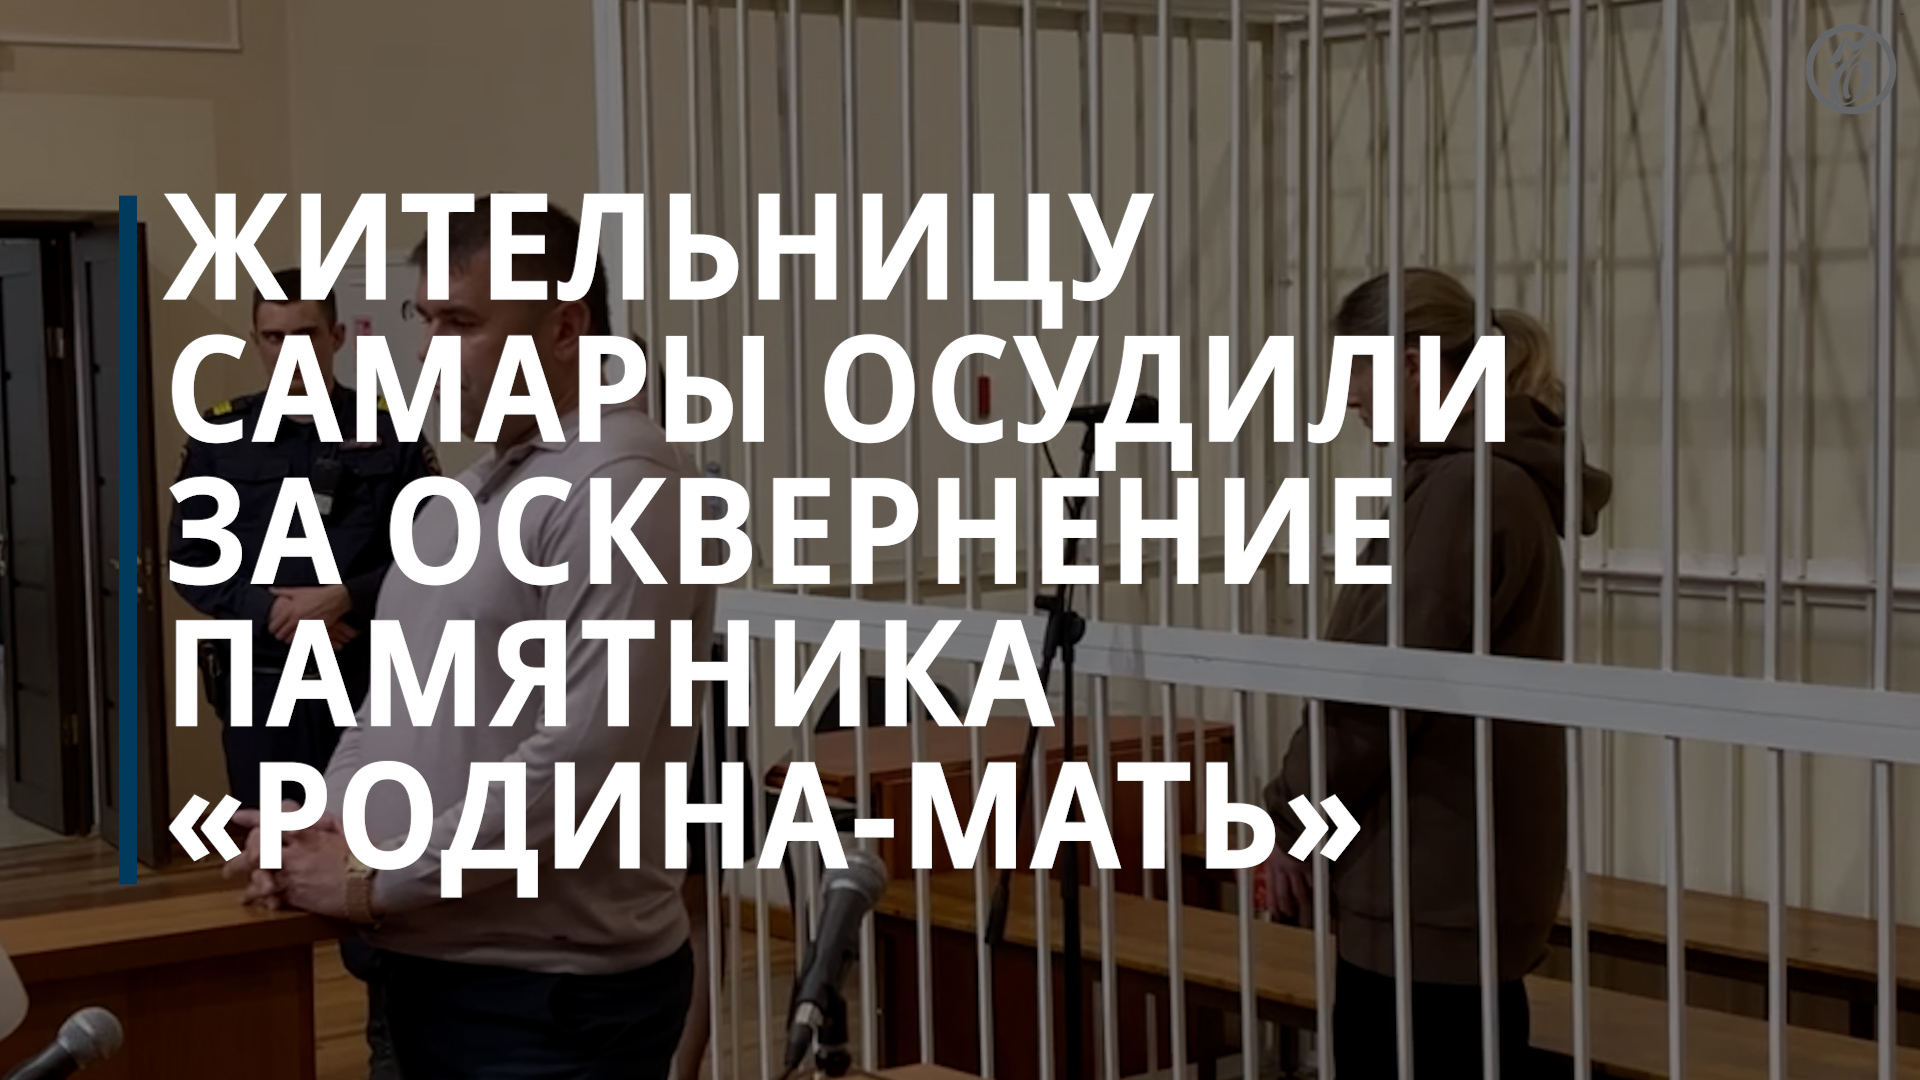 «Пощекотавшую» «Родину-мать» блогершу приговорили к принудительным работам — Коммерсантъ